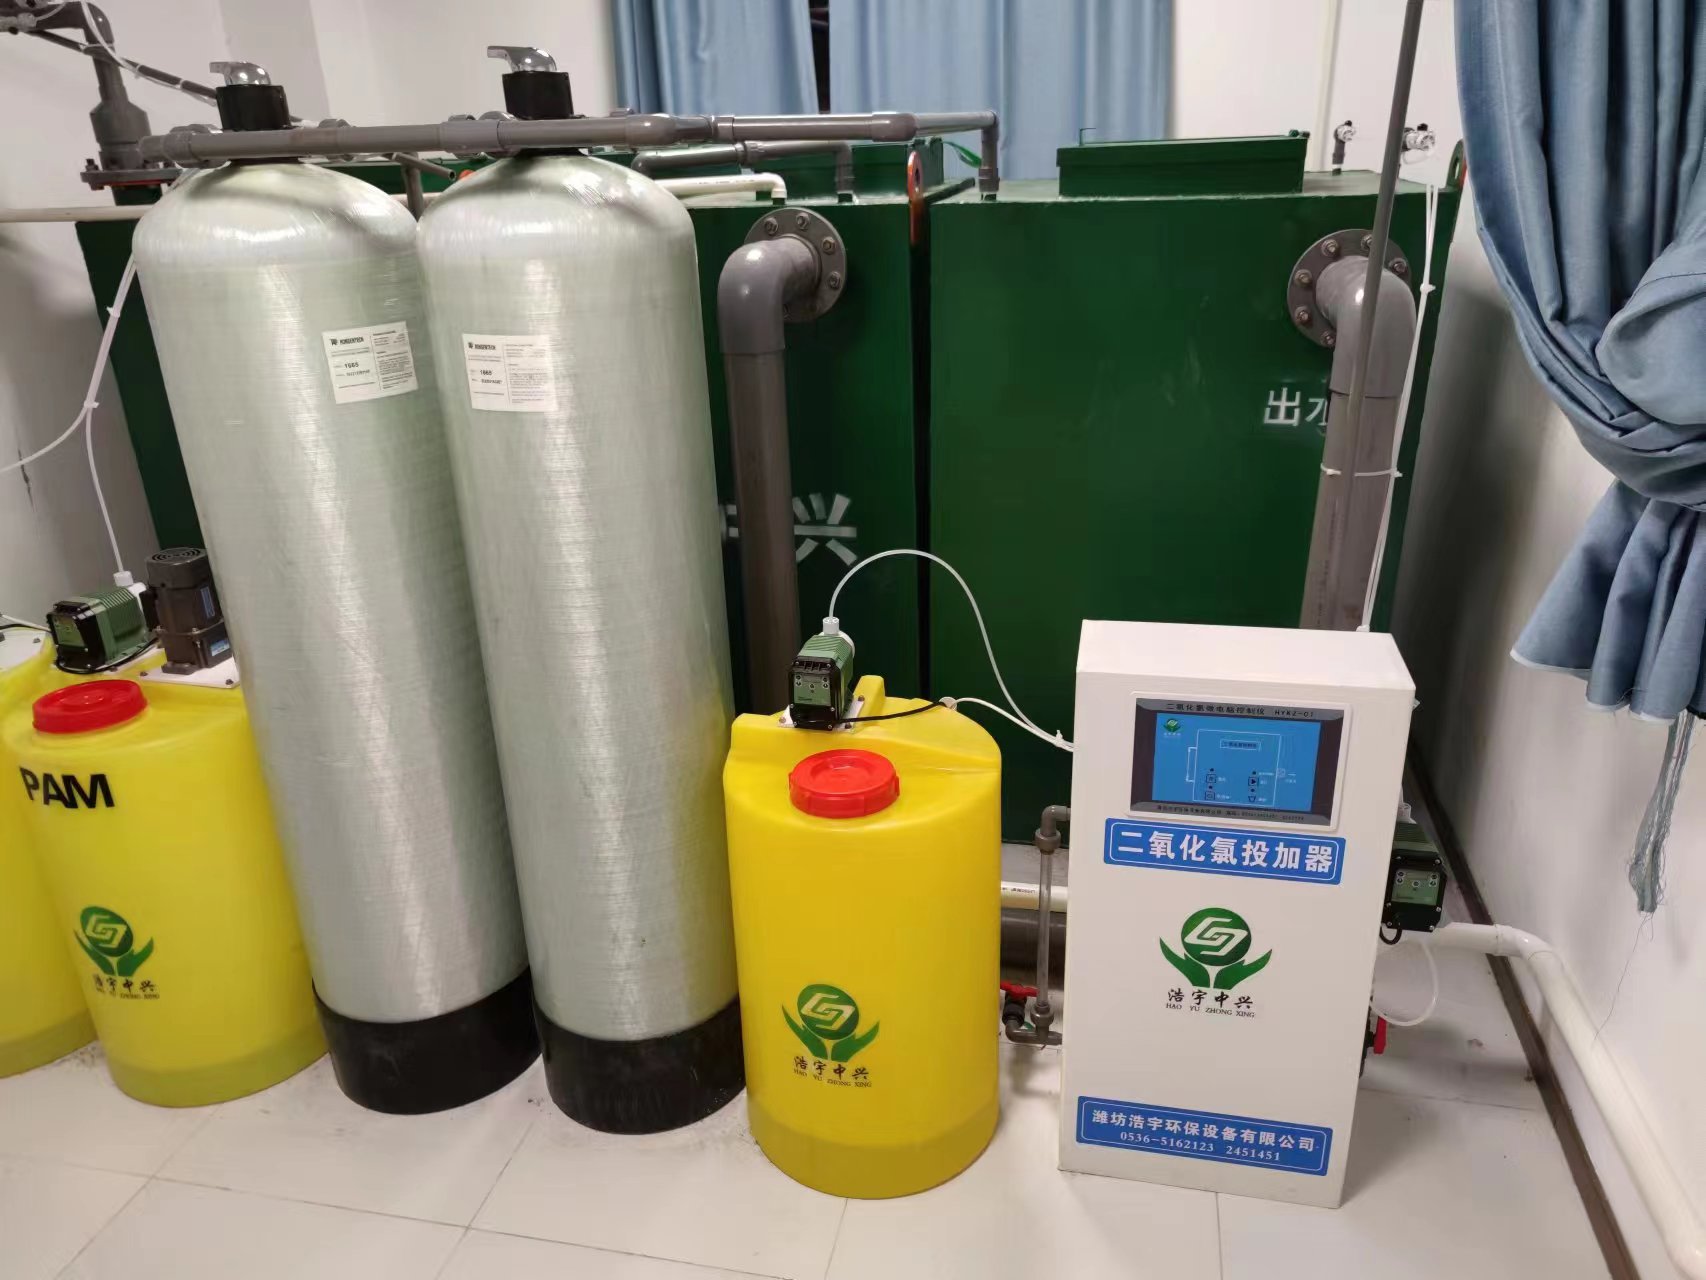 柳州血液透析中心污水处理设备